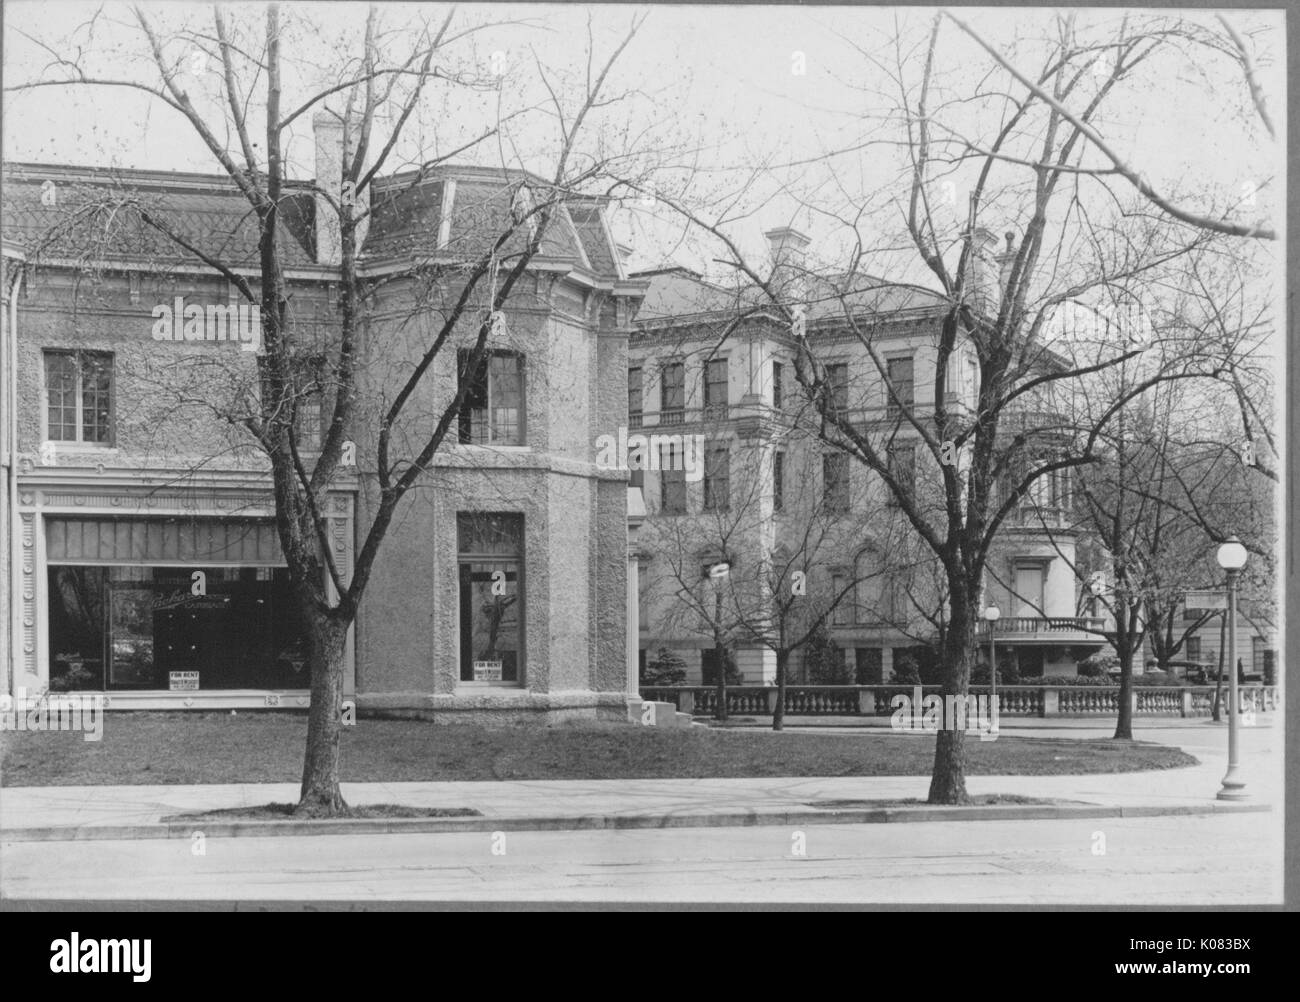 Deux bâtiments, le bâtiment sur la gauche avec deux étages et une grande fenêtre sur la première histoire, la taille des fenêtres à l'étage, cheminée, bâtiment à droite derrière le bâtiment à gauche avec quatre étages, de nombreuses fenêtres, et d'une balustrade entourant la zone avant ; deux arbres sans feuilles, et d'un réverbère devant le bâtiment de gauche ; Roland Park/Guilford, 1910. Cette image est tirée d'une série sur la construction et la vente de maisons dans le quartier Roland Park/Guilford de Baltimore, a streetcar suburb et l'une des premières communautés planifiées aux États-Unis. Banque D'Images